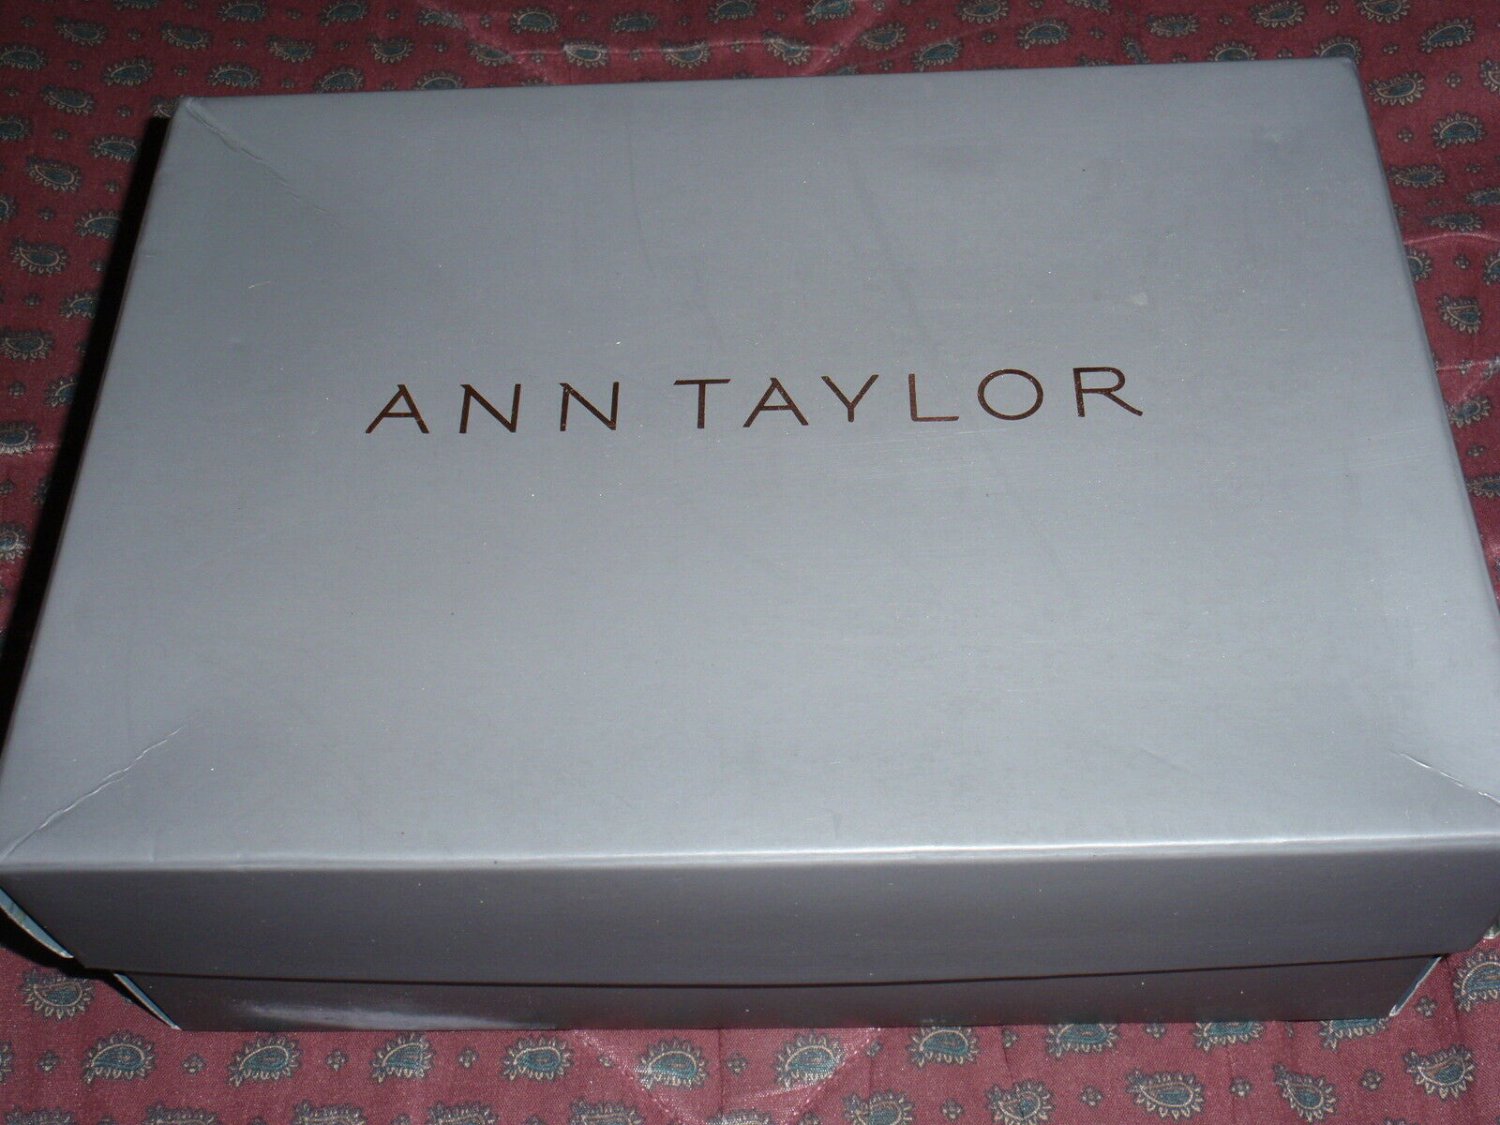 ANN TAYLOR Shoe Gift Box - EMPTY BOX - size 11 x 8 x 4